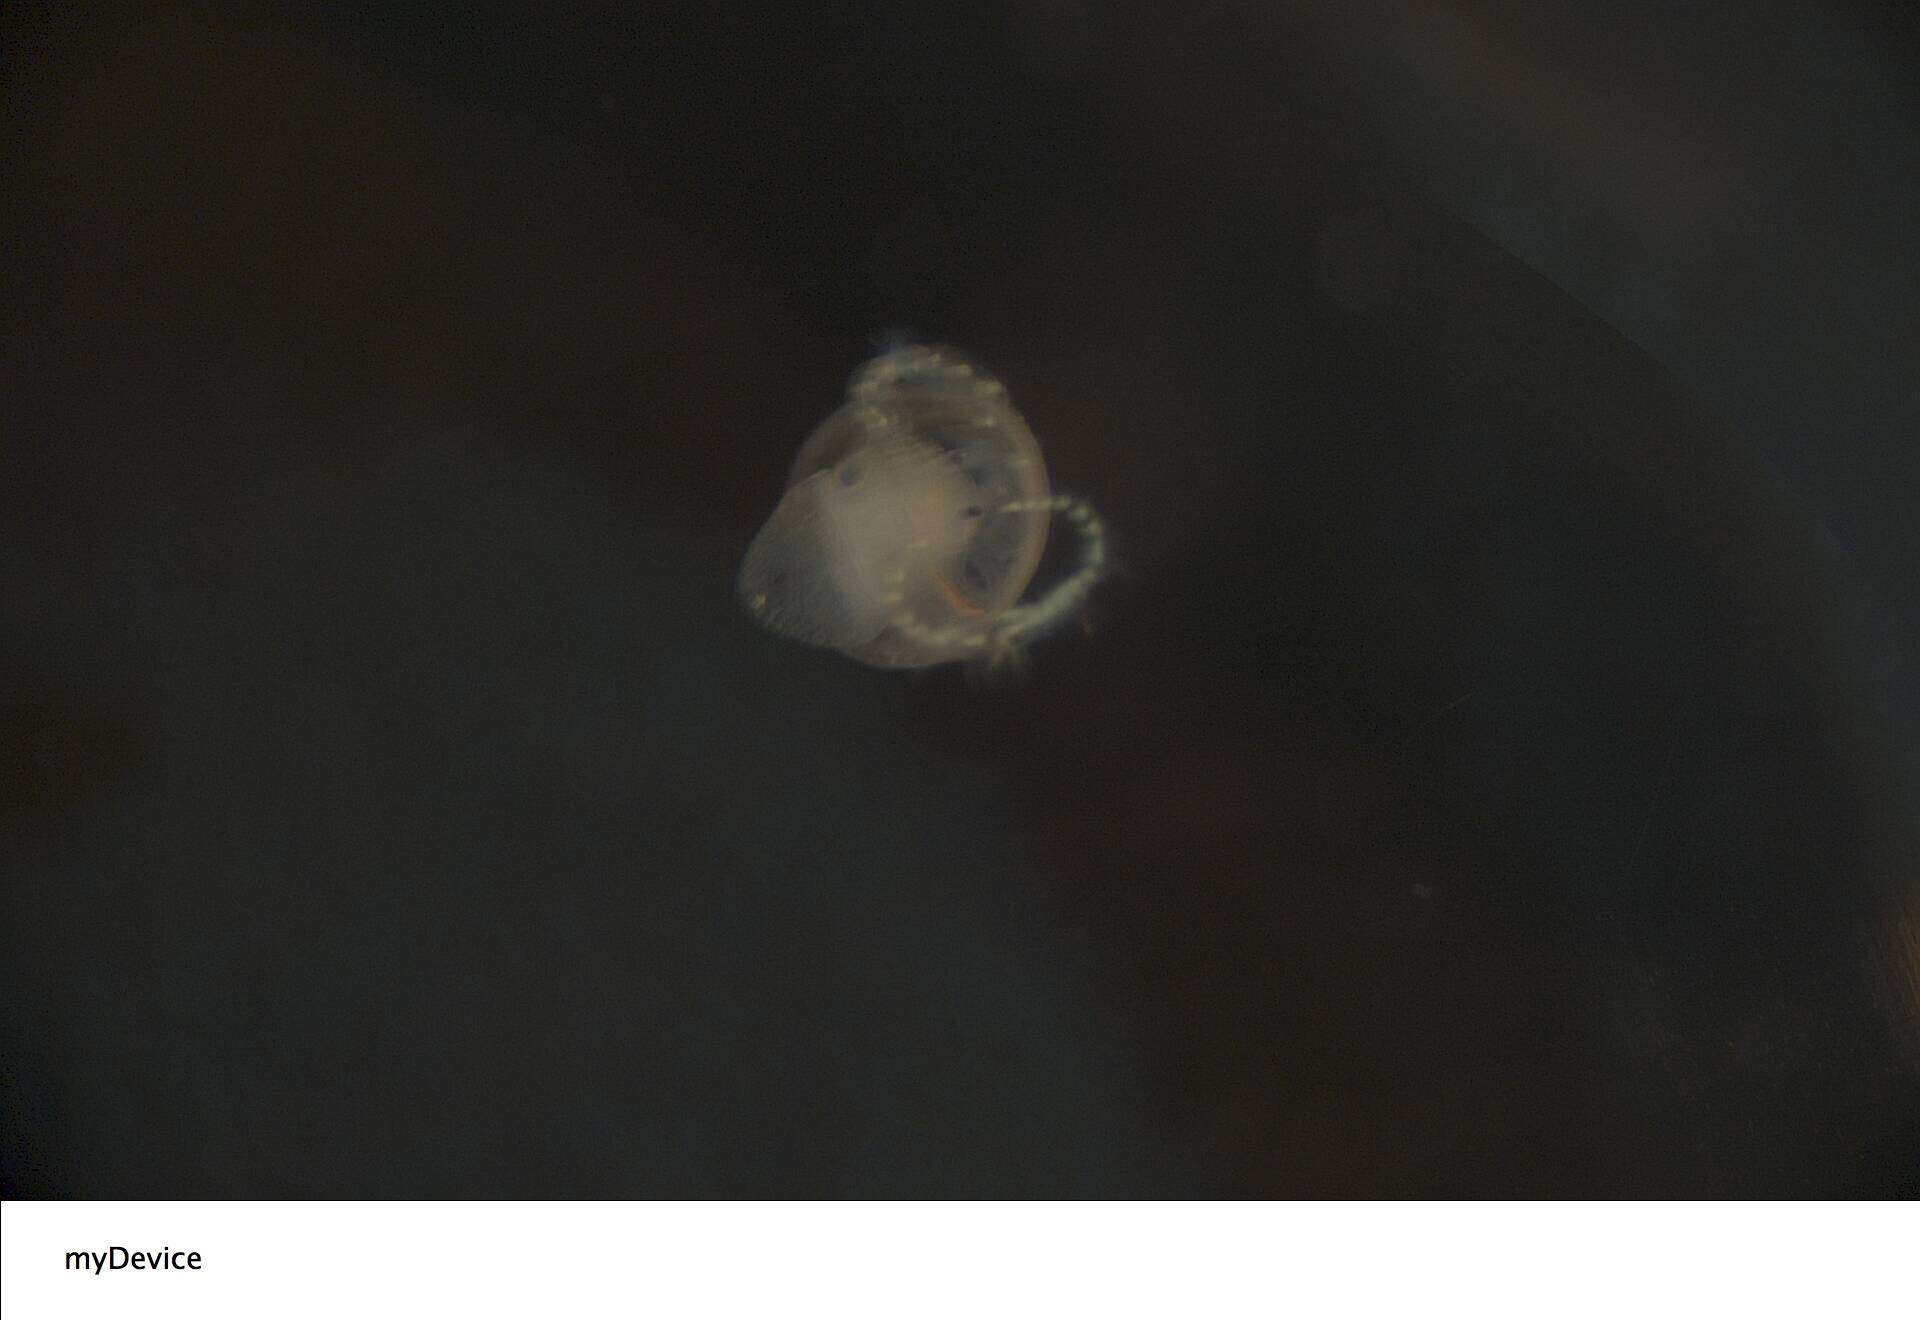 Image of Common slipper shell